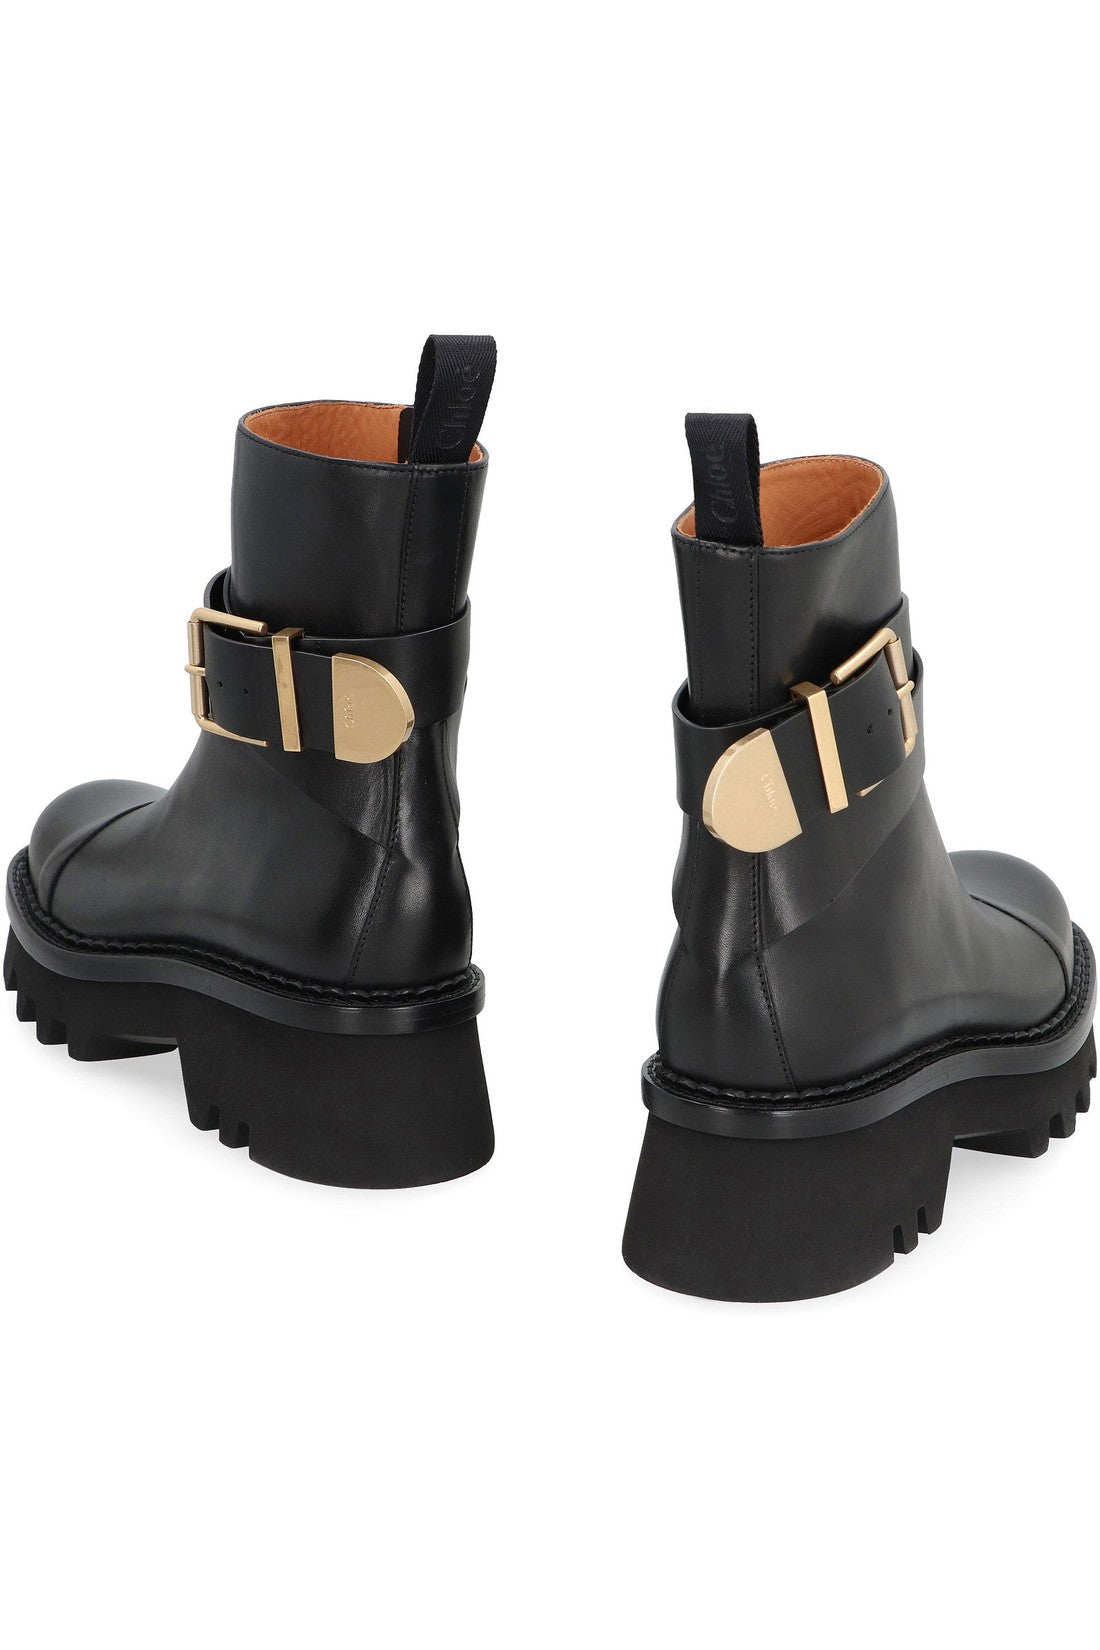 Chloé-OUTLET-SALE-Owena leather ankle boots-ARCHIVIST